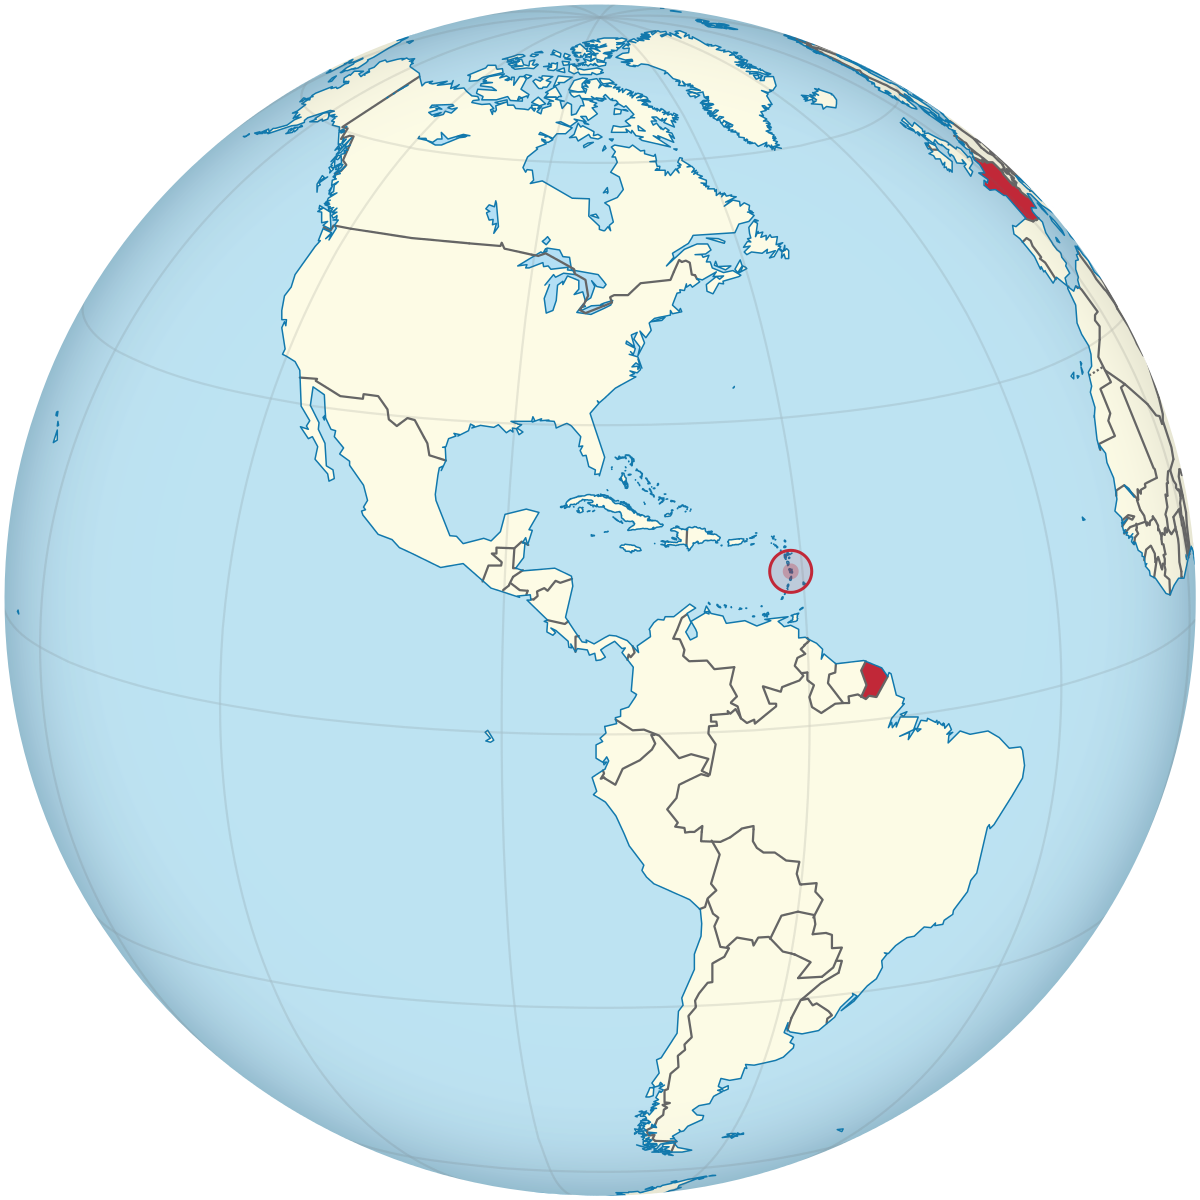 landkarte martinique File France On The Globe Martinique Americas Centered Svg Wikimedia Commons landkarte martinique